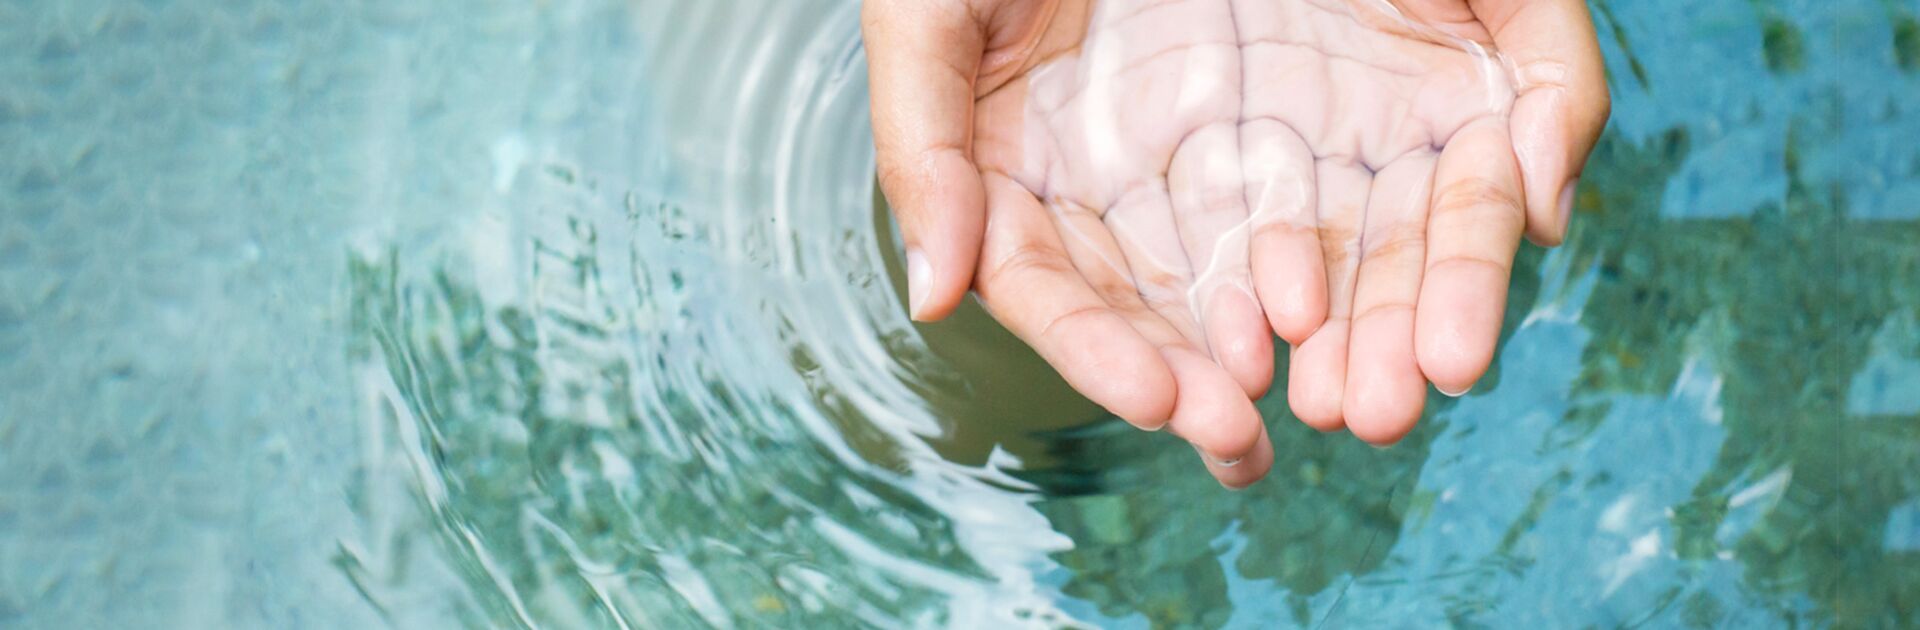 Hände schöpfen Wasser aus einer Quelle